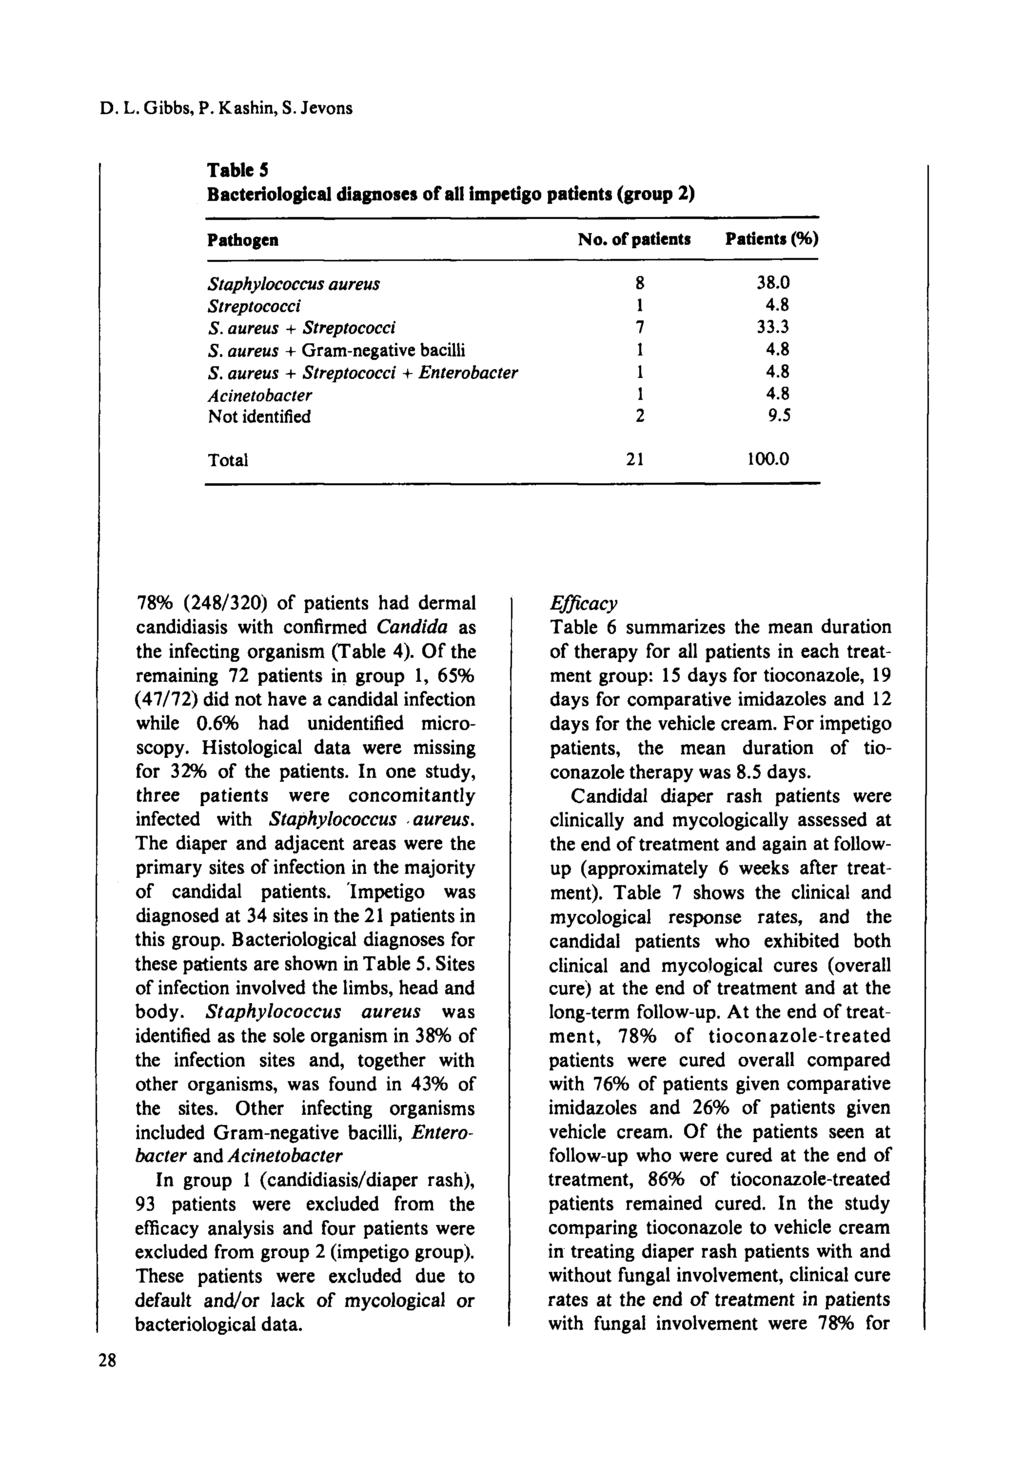 D. L. Gibbs, P. Kashin, S. Jevons Table S Bacteriological diagnoses ofall impetigo patients (group 2) Pathogen Staphylococcus aureus Streptococci S. aureus + Streptococci S.